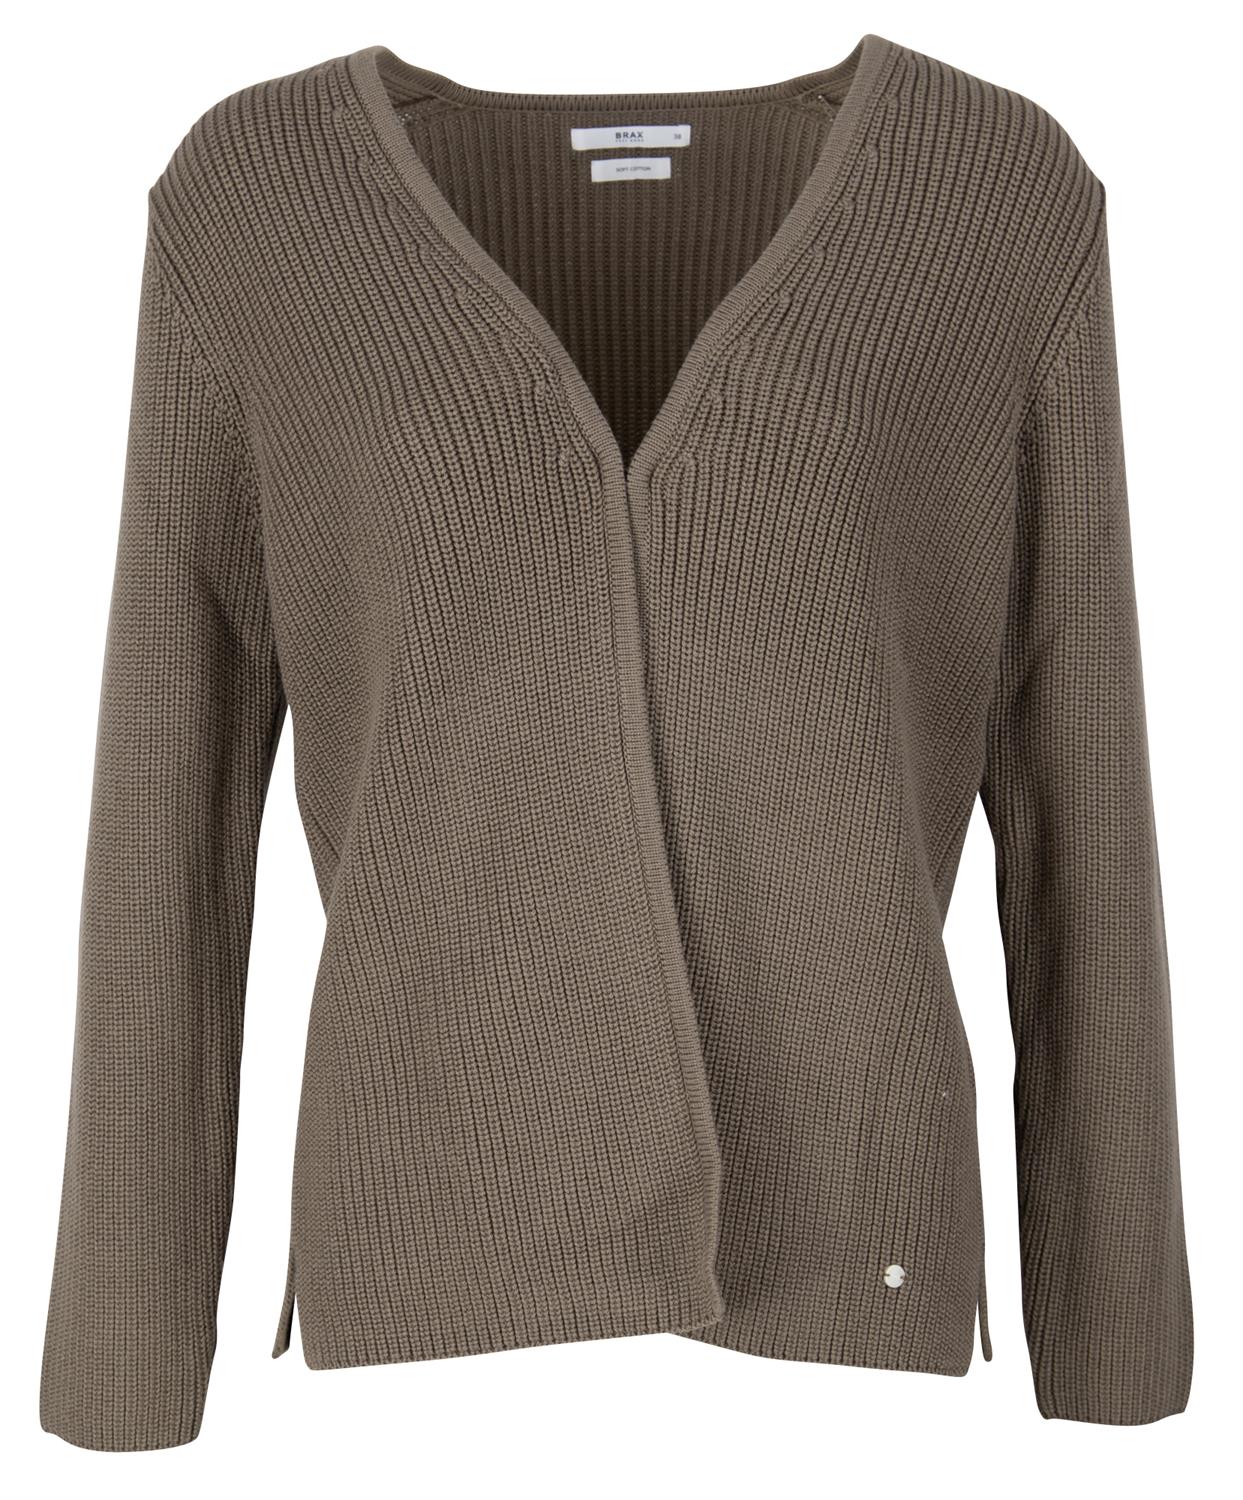 Brax Damen Pullover Style ANIQUE khaki bequem online kaufen bei | Cardigans